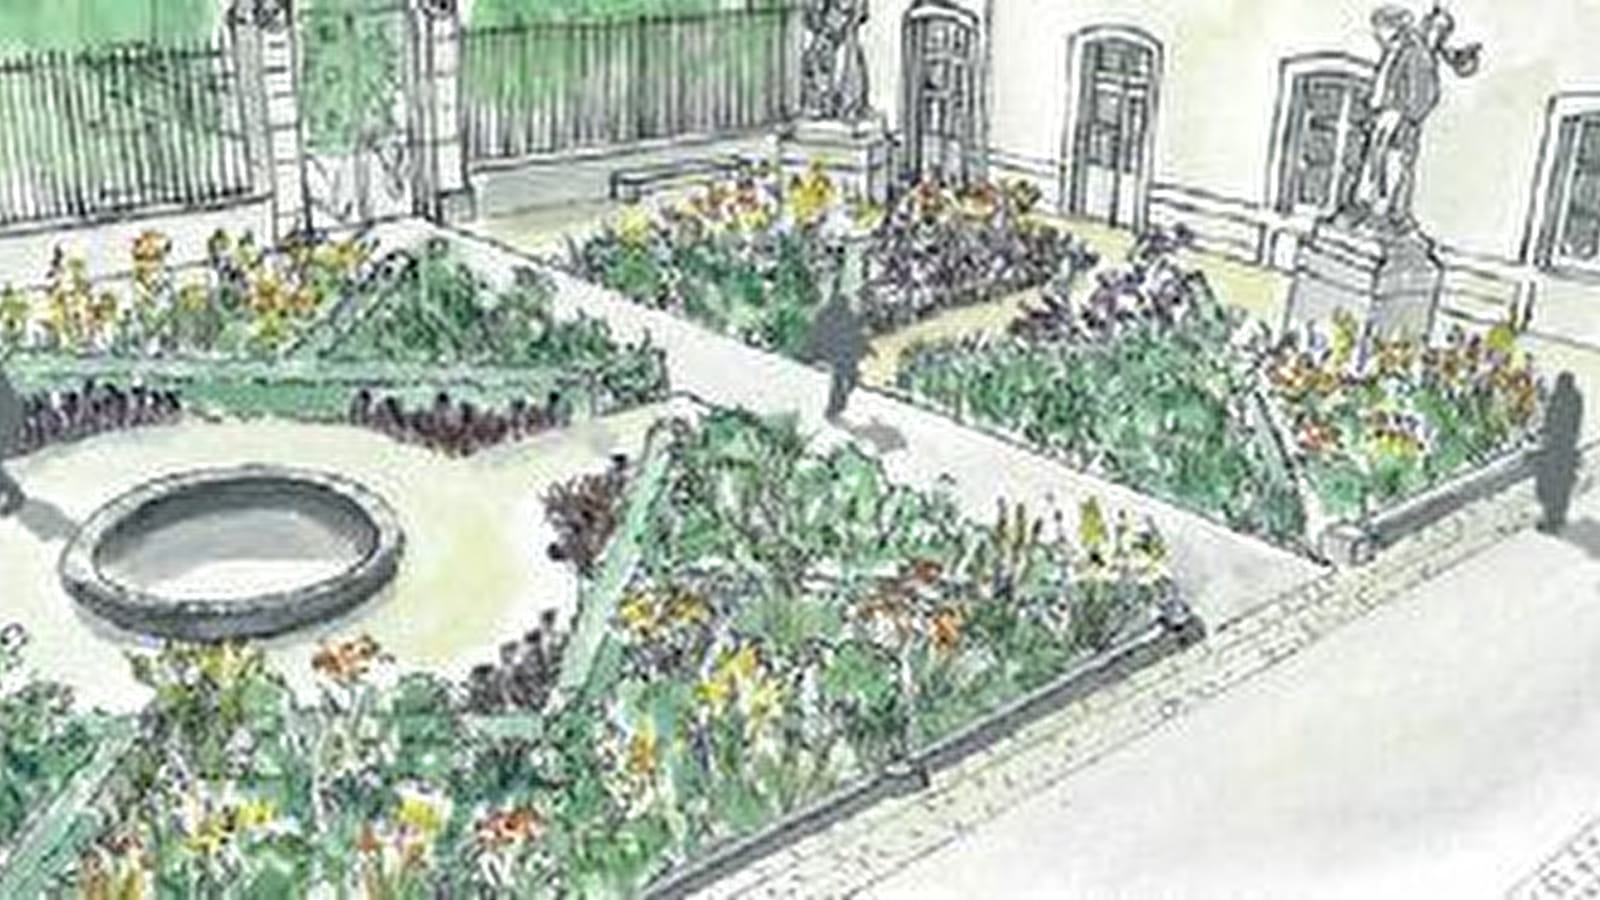 Hôtel-Dieu - Hospices de Beaune - Rendez-vous aux jardins - Échos polychromes, un jardin hospitalier